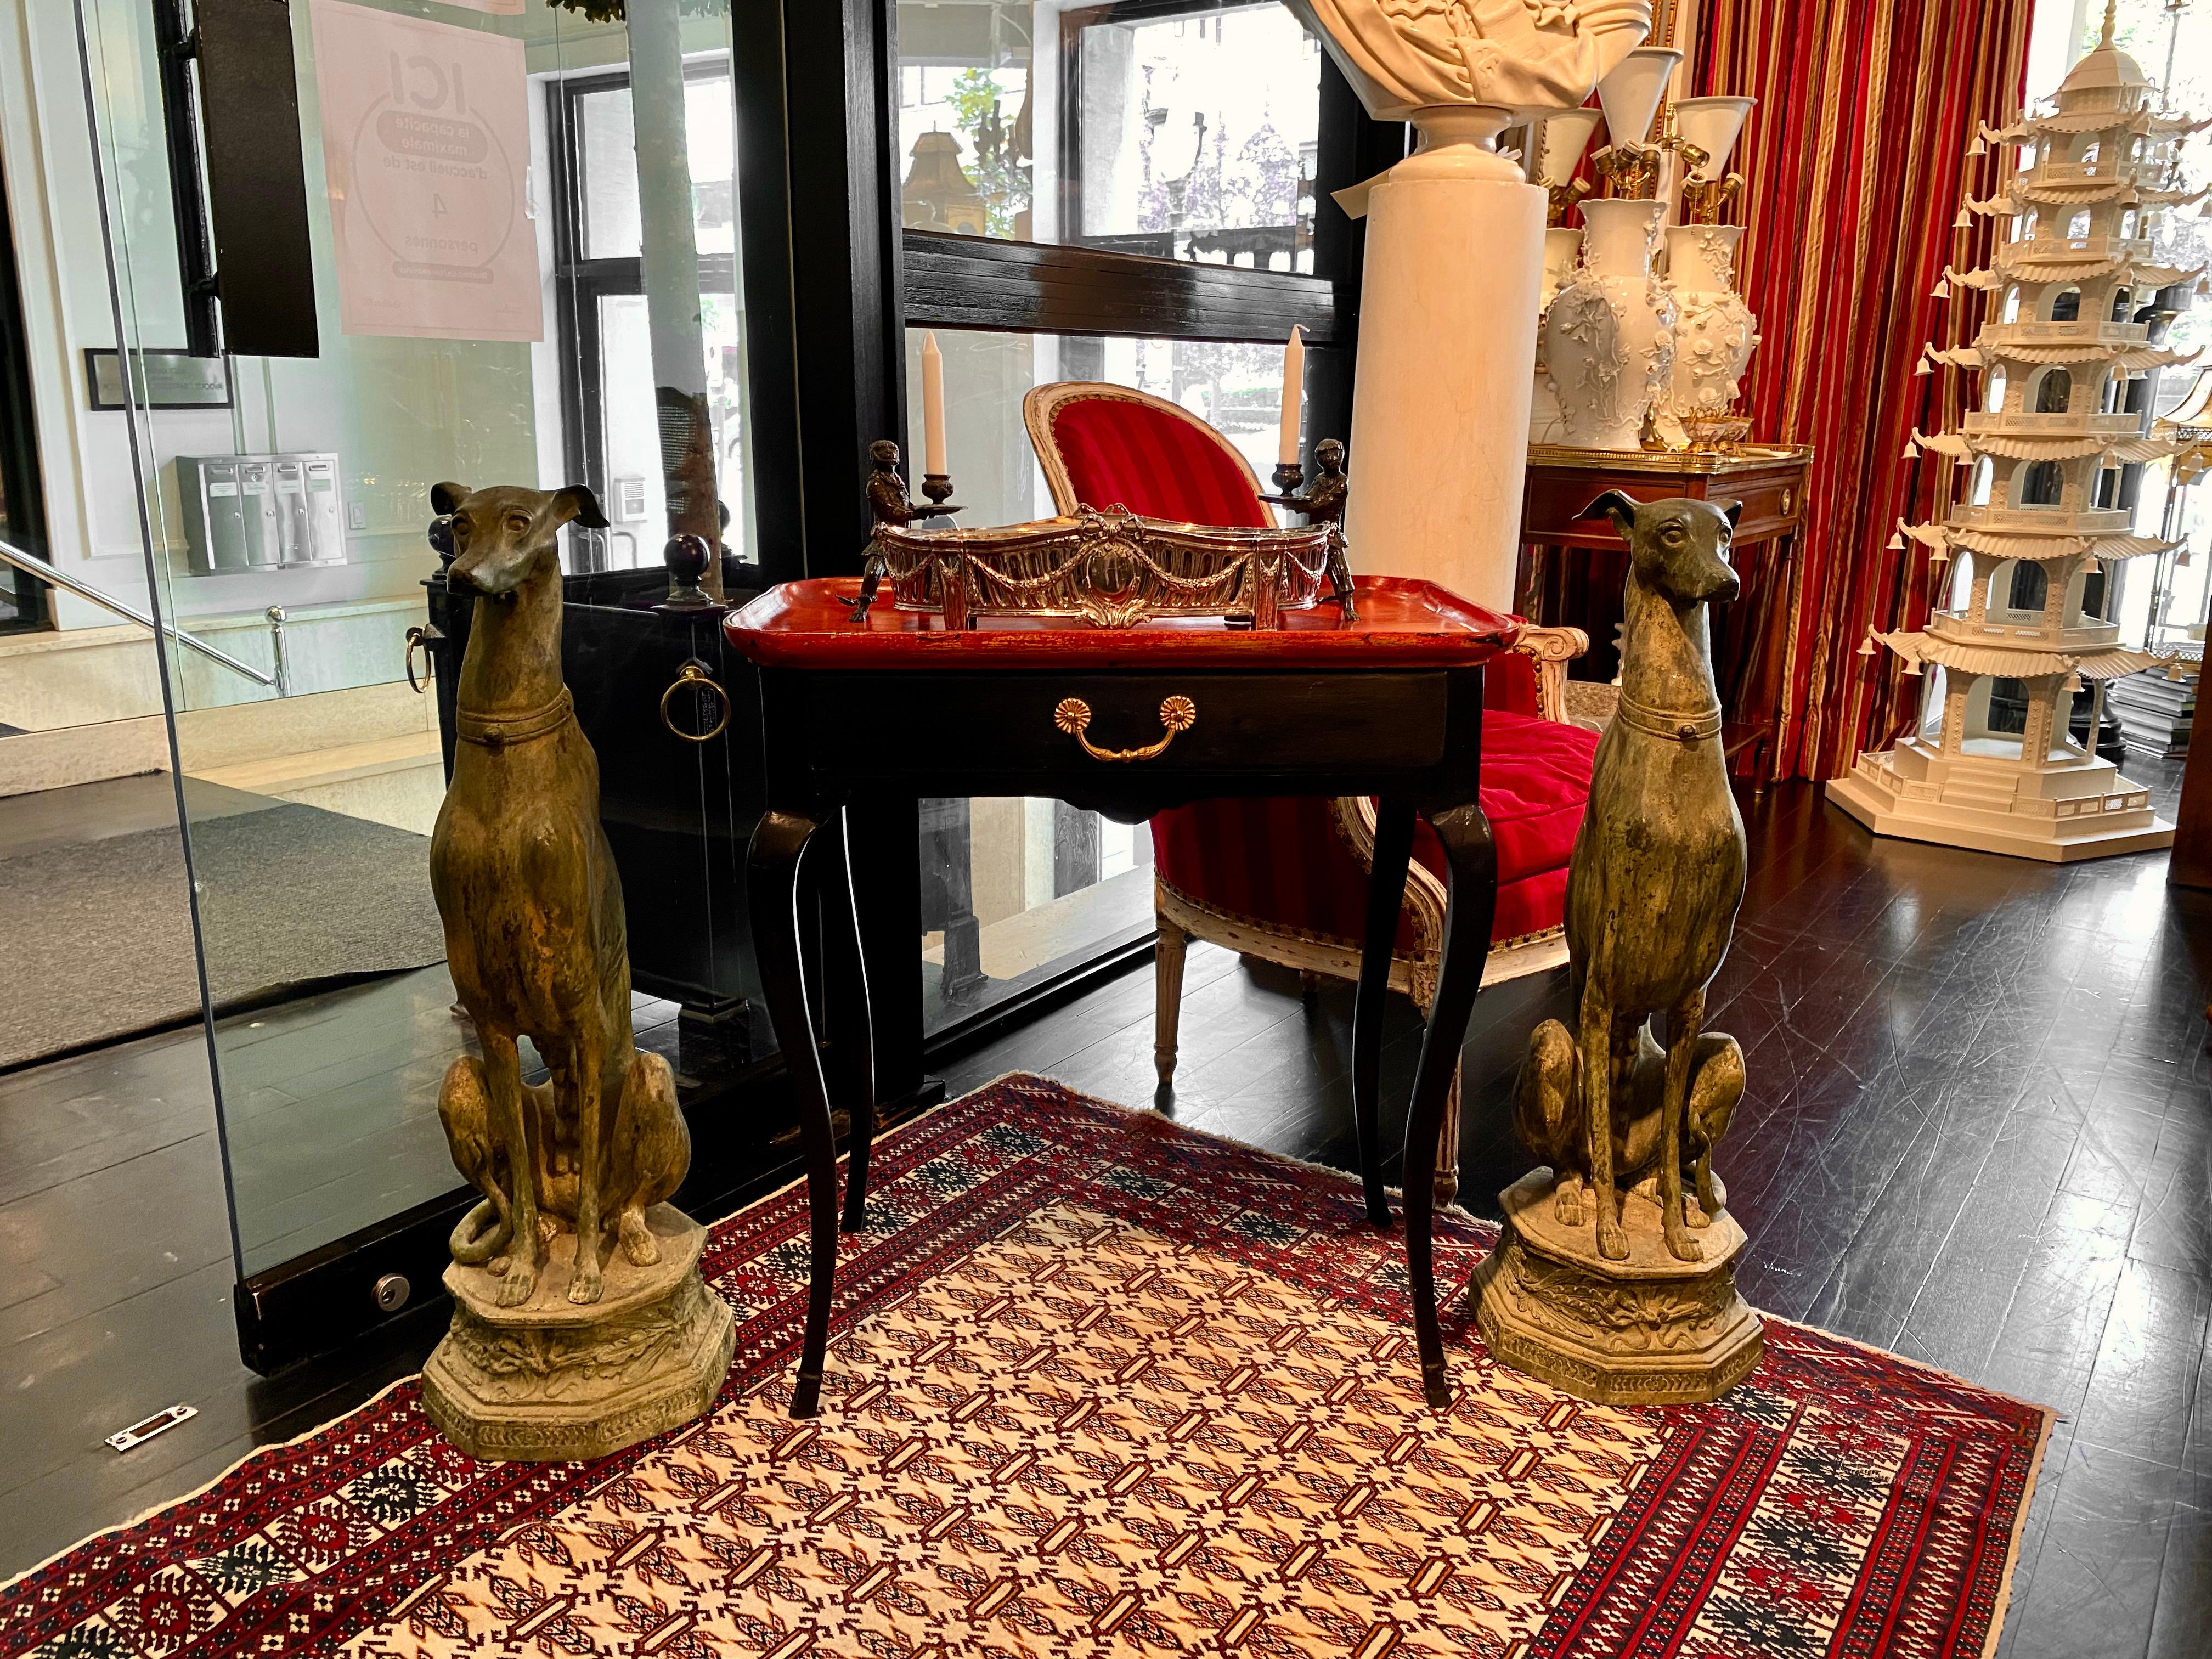 Table à plateau provençale de la fin du XVIIIe siècle, à pieds cabriole élancés, typique de l'époque Louis XV. La finition noire satinée laquée et ébénisée contraste magnifiquement avec le plateau rectangulaire rouge vif. Le plateau aux bords